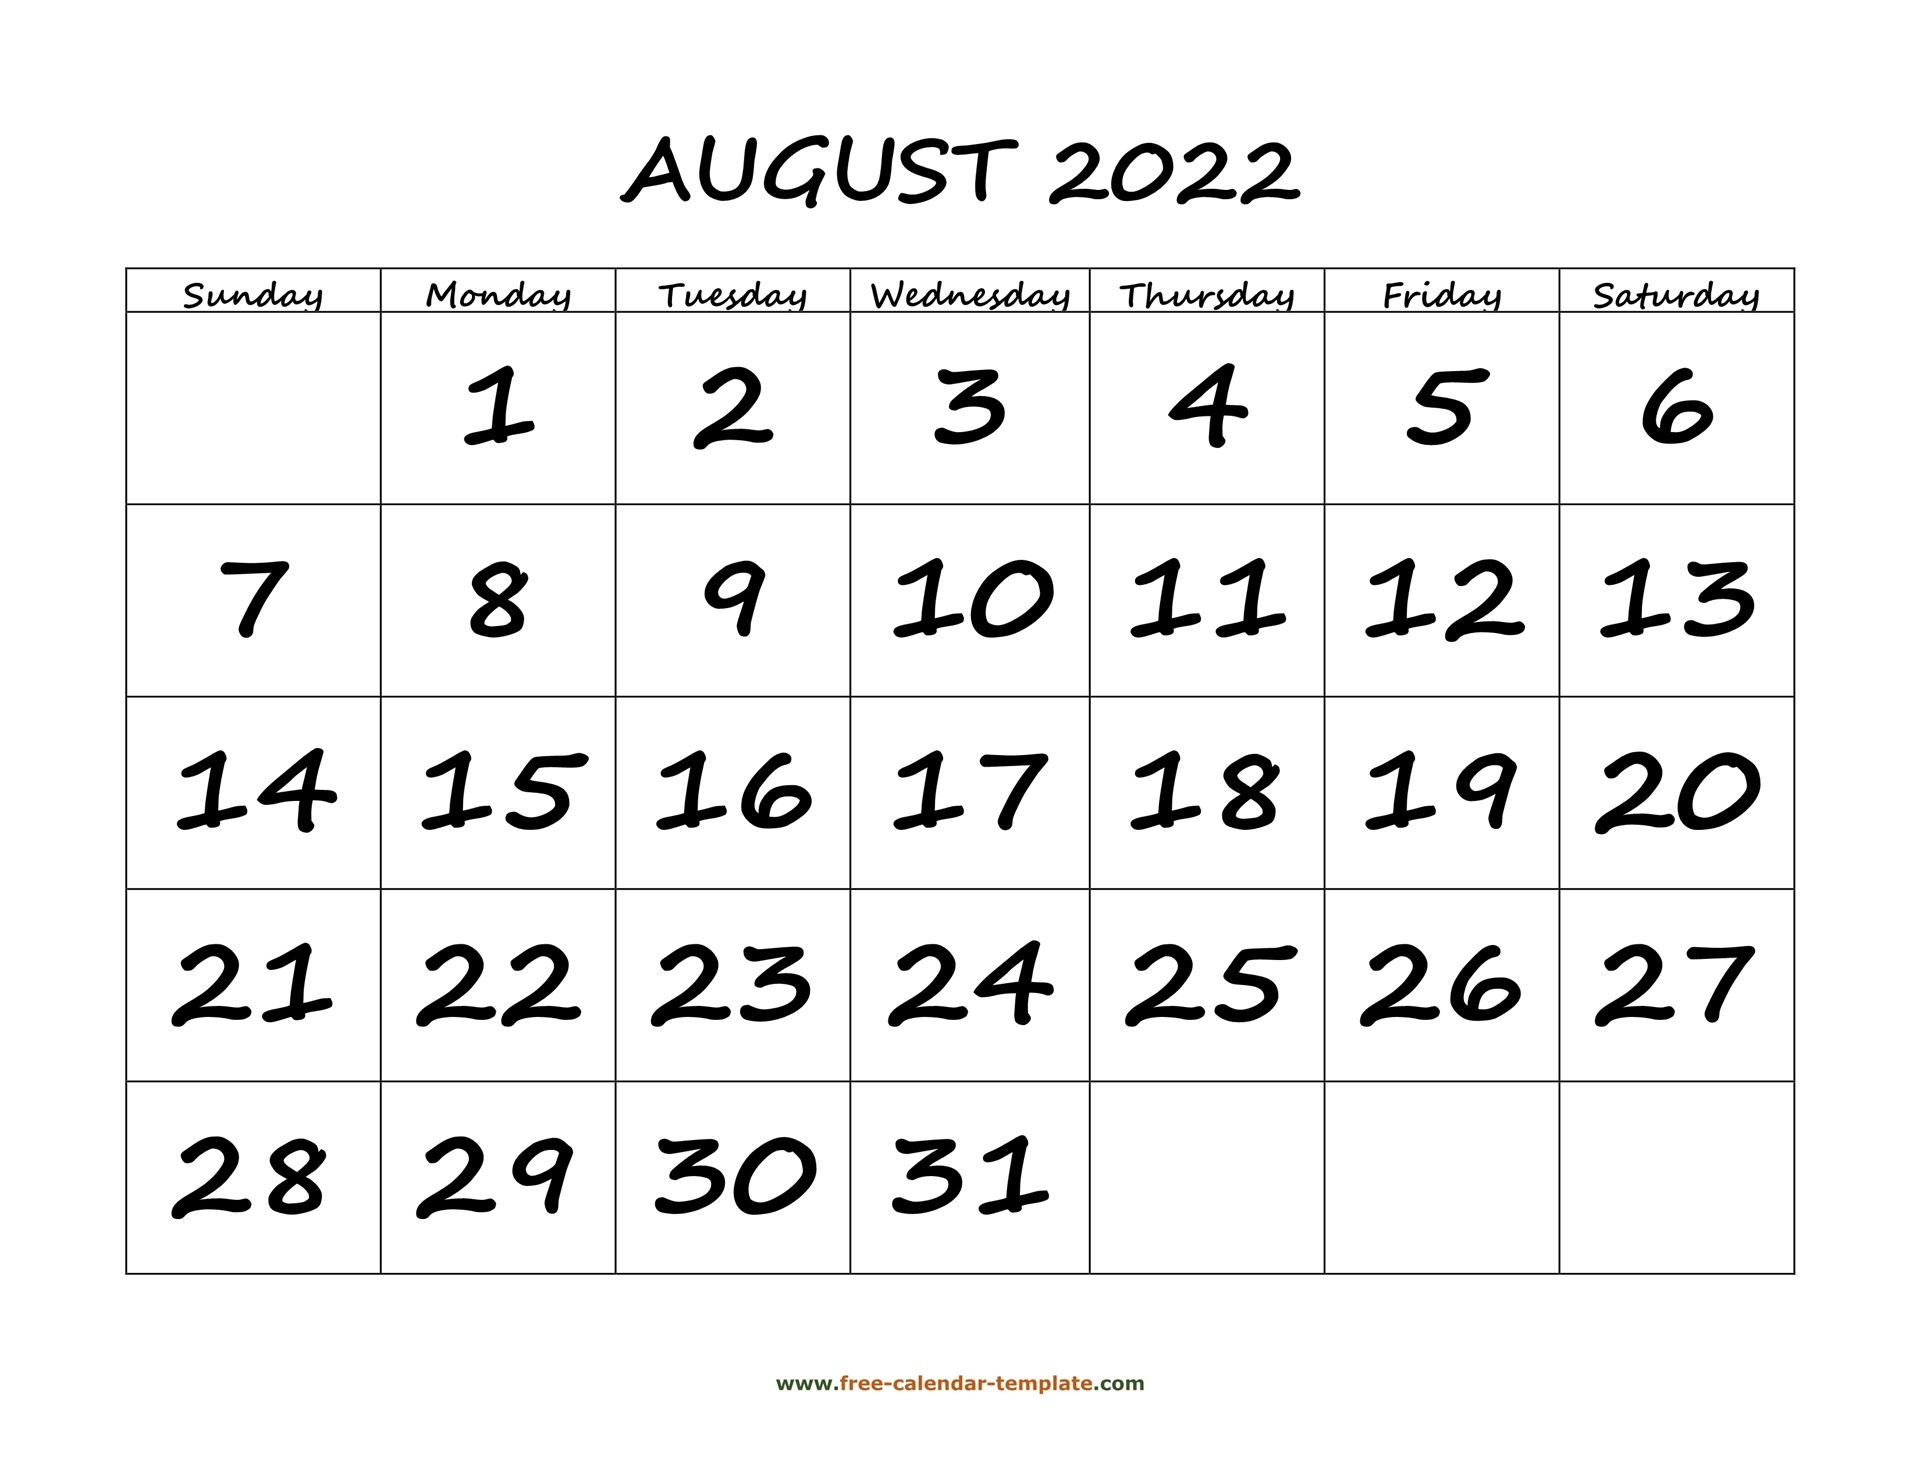 August 2022 Free Calendar Tempplate | Free-Calendar